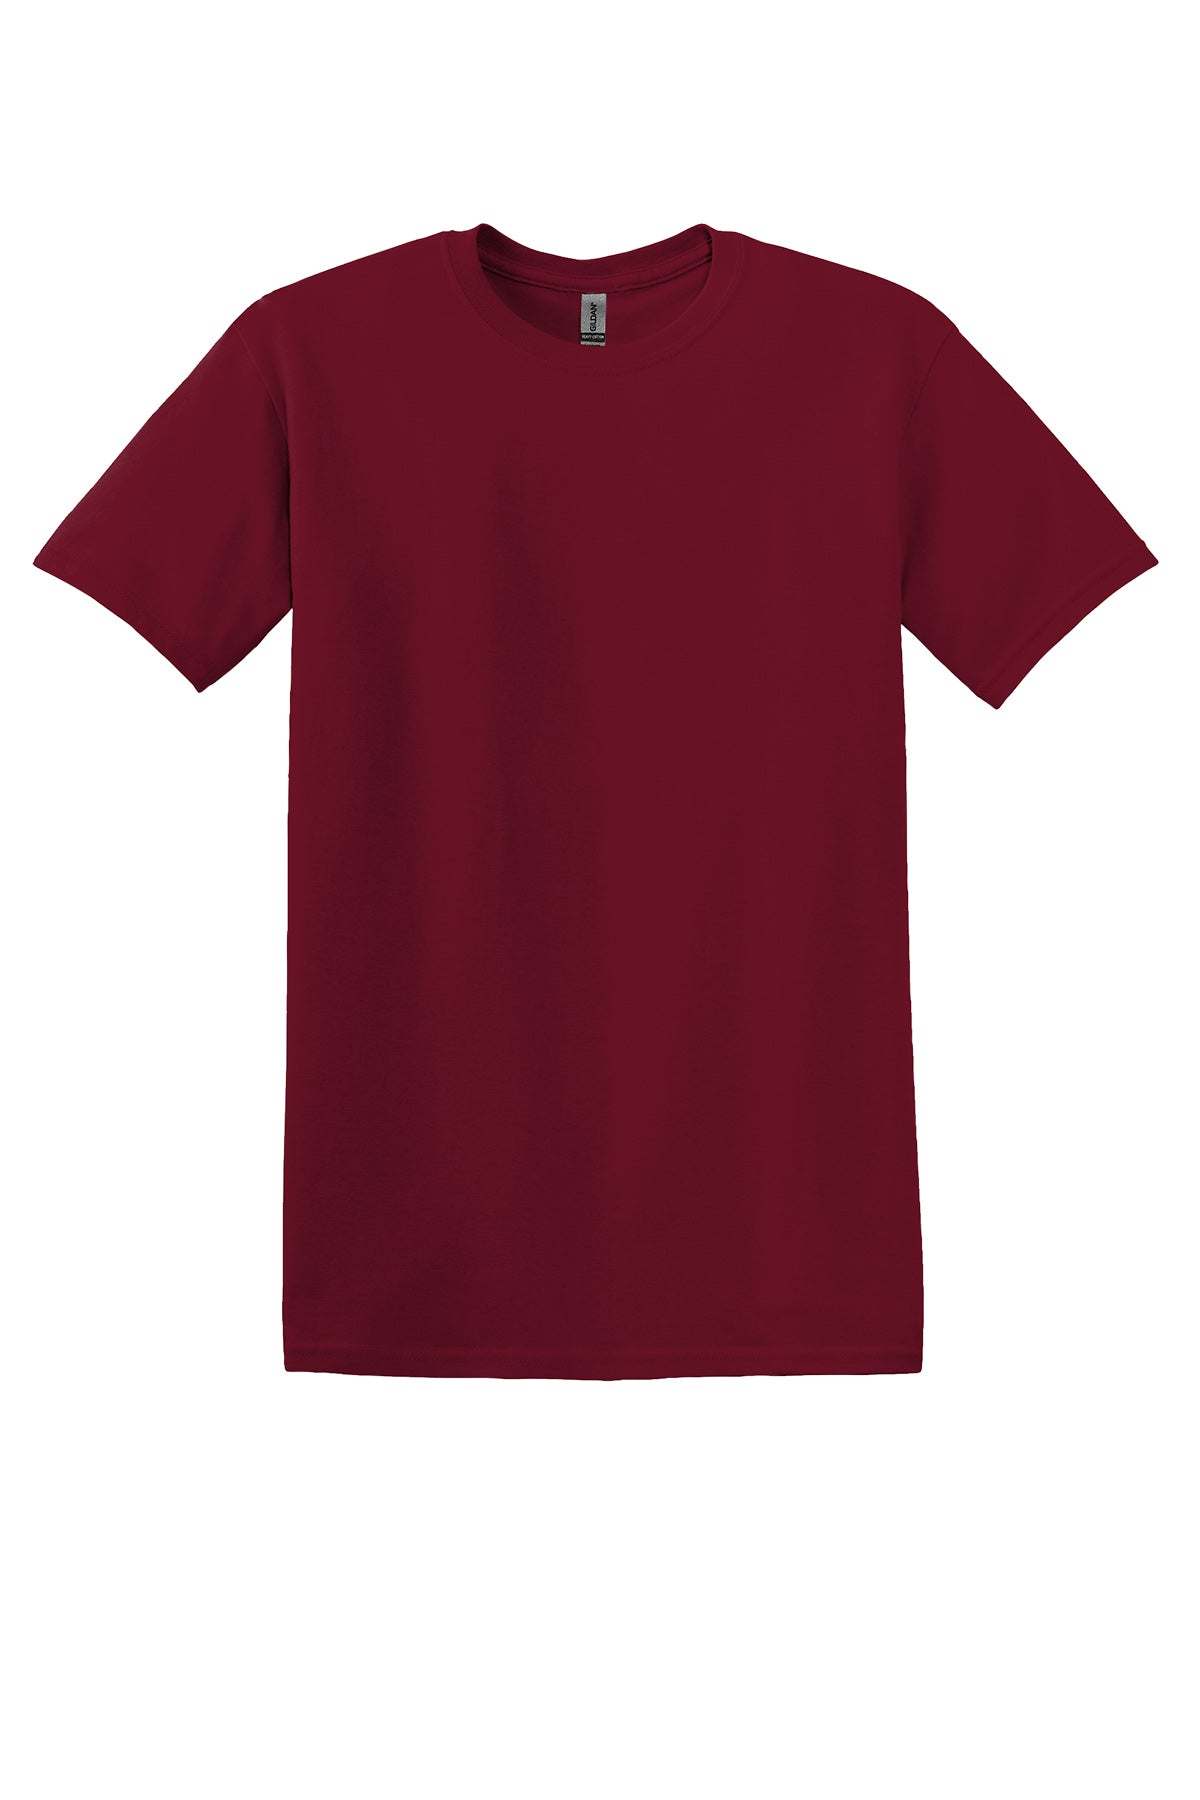 Gildan 5000 Adult T-Shirt Ad Small / Cardinal Red